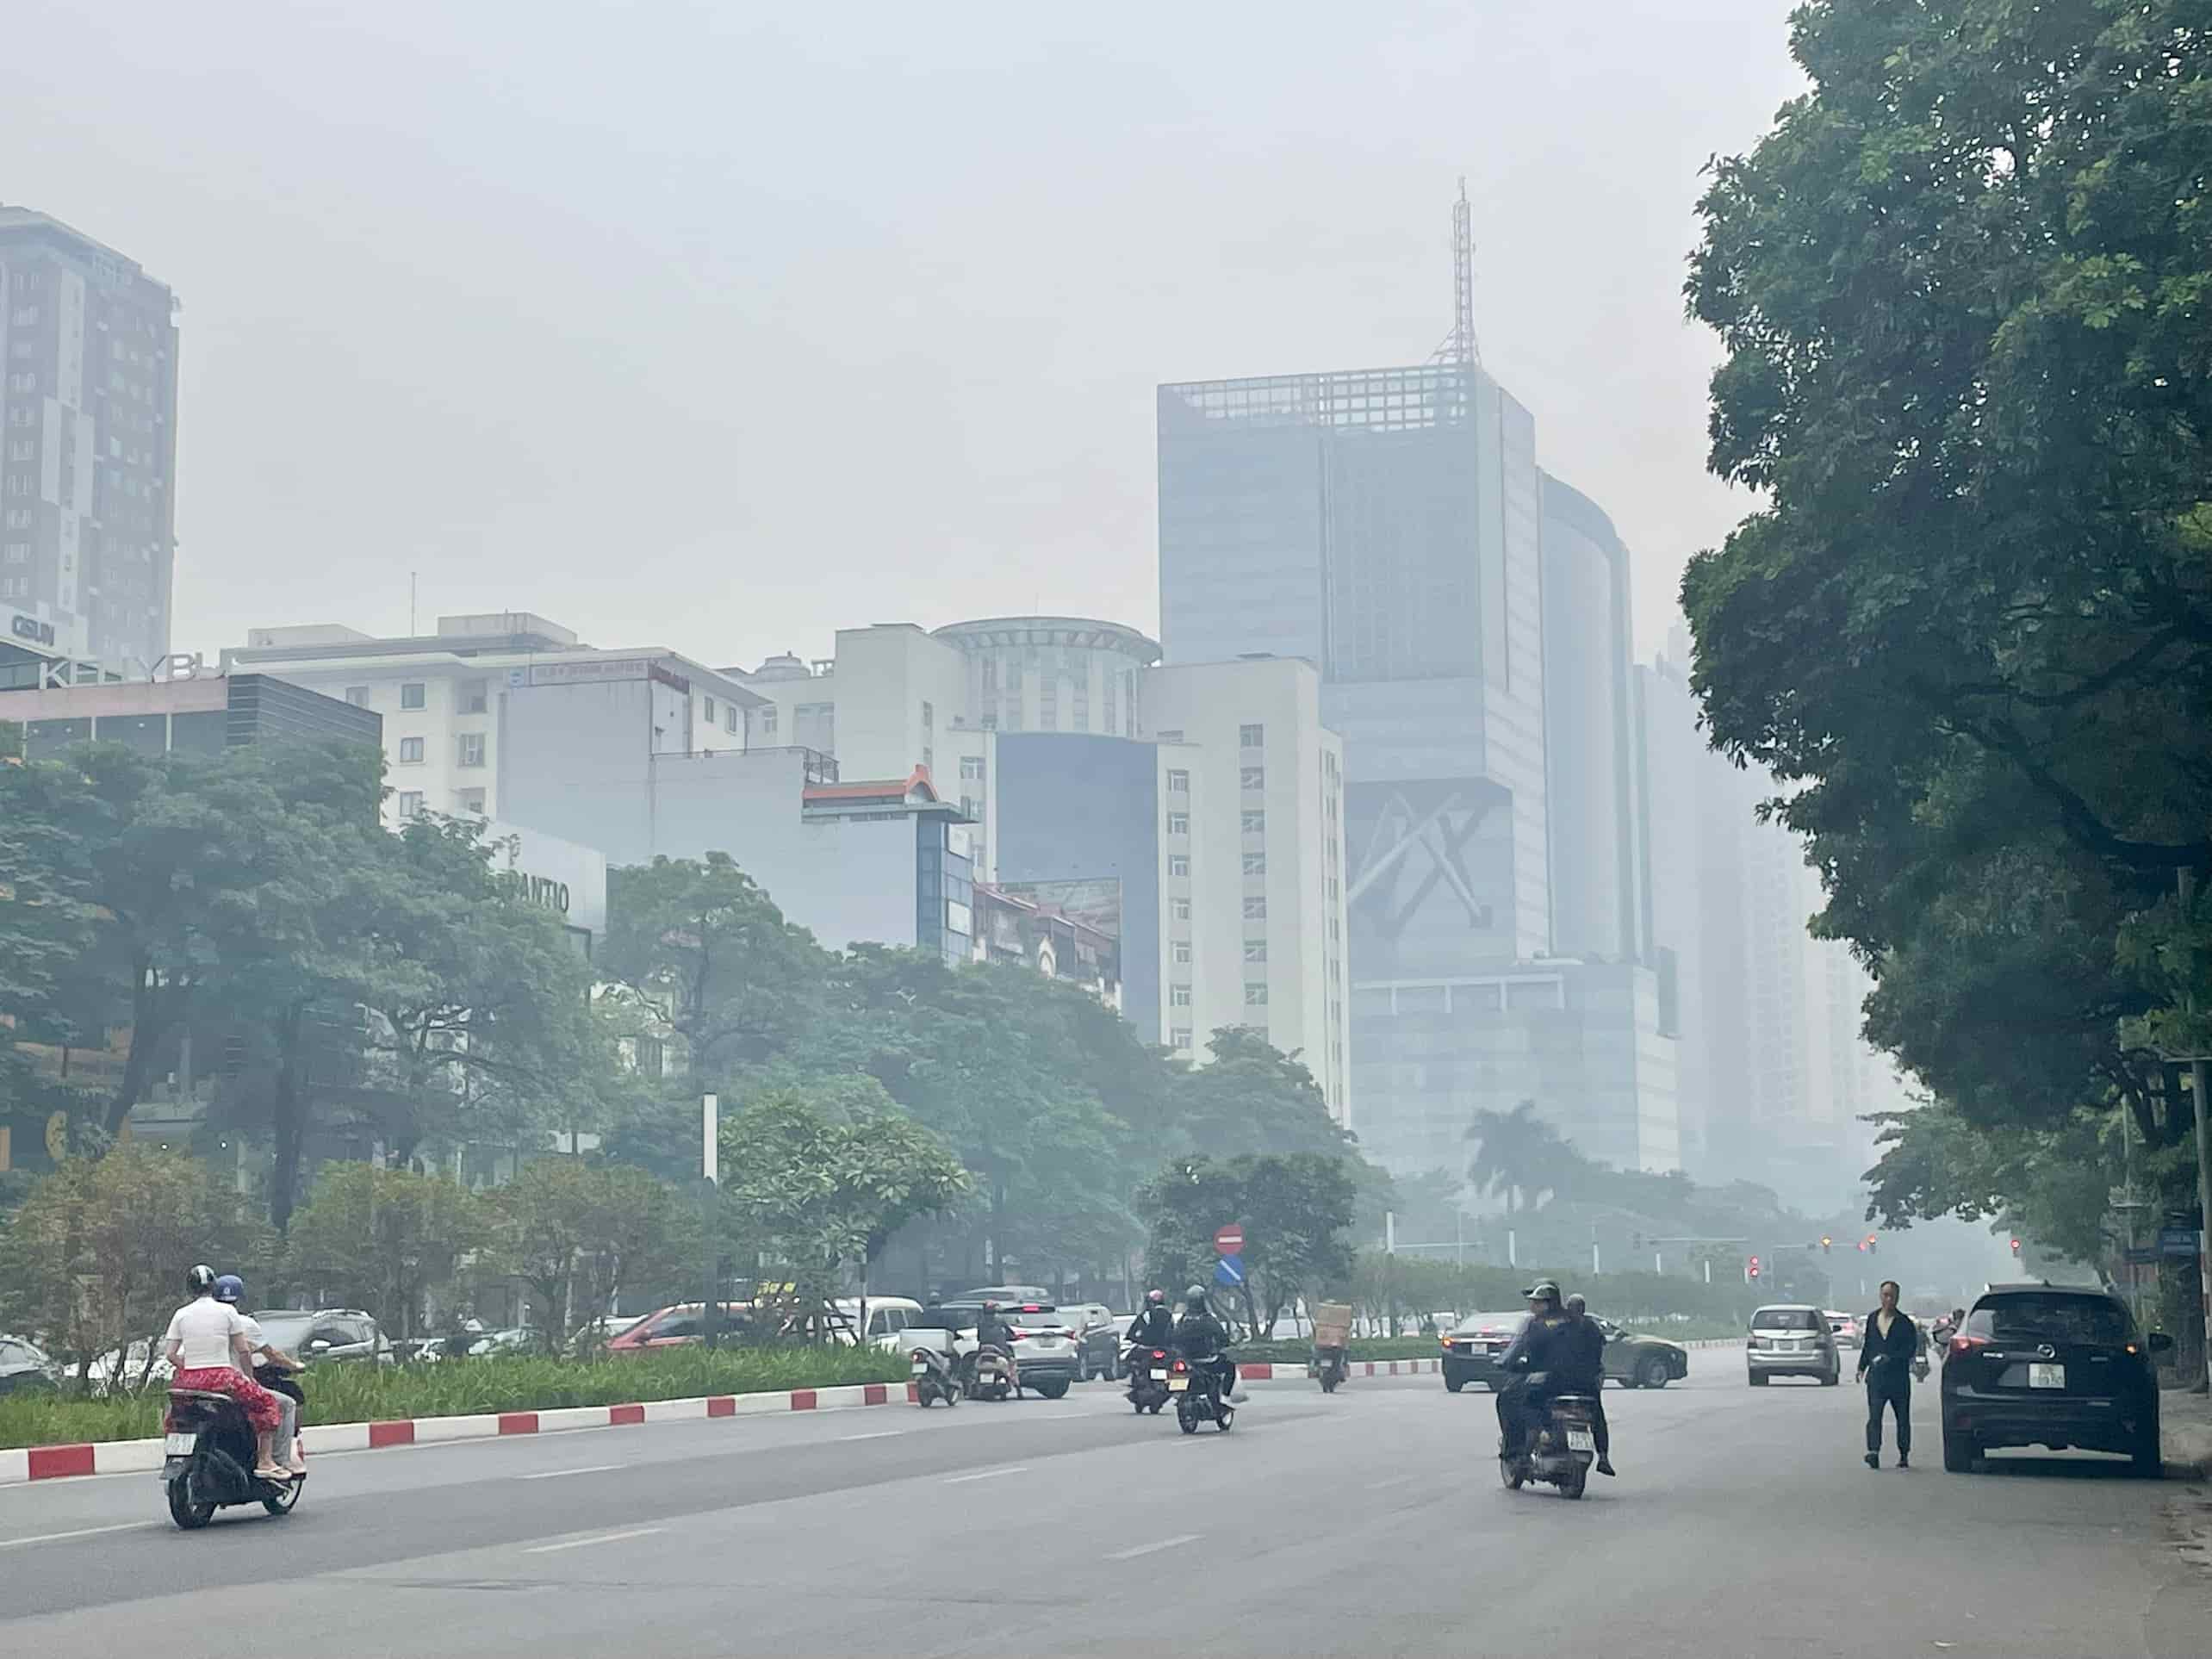 Hình ảnh ghi nhận tại đường Trần Duy Hưng (Cầu Giấy, Hà Nội) lúc hơn 10h, các tòa nhà bị bao phủ bởi